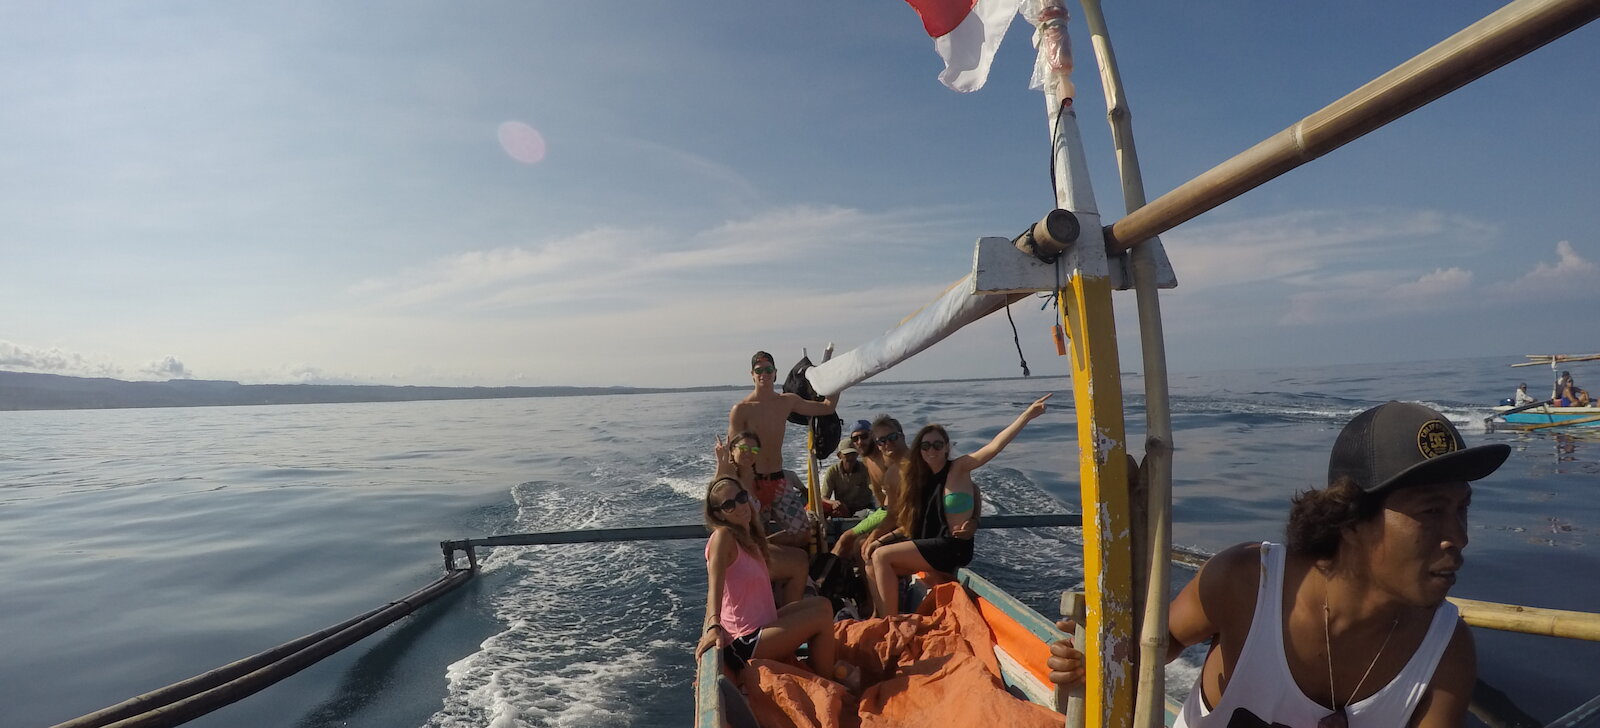 Outrigger boat heading to Banana Island Sumatra